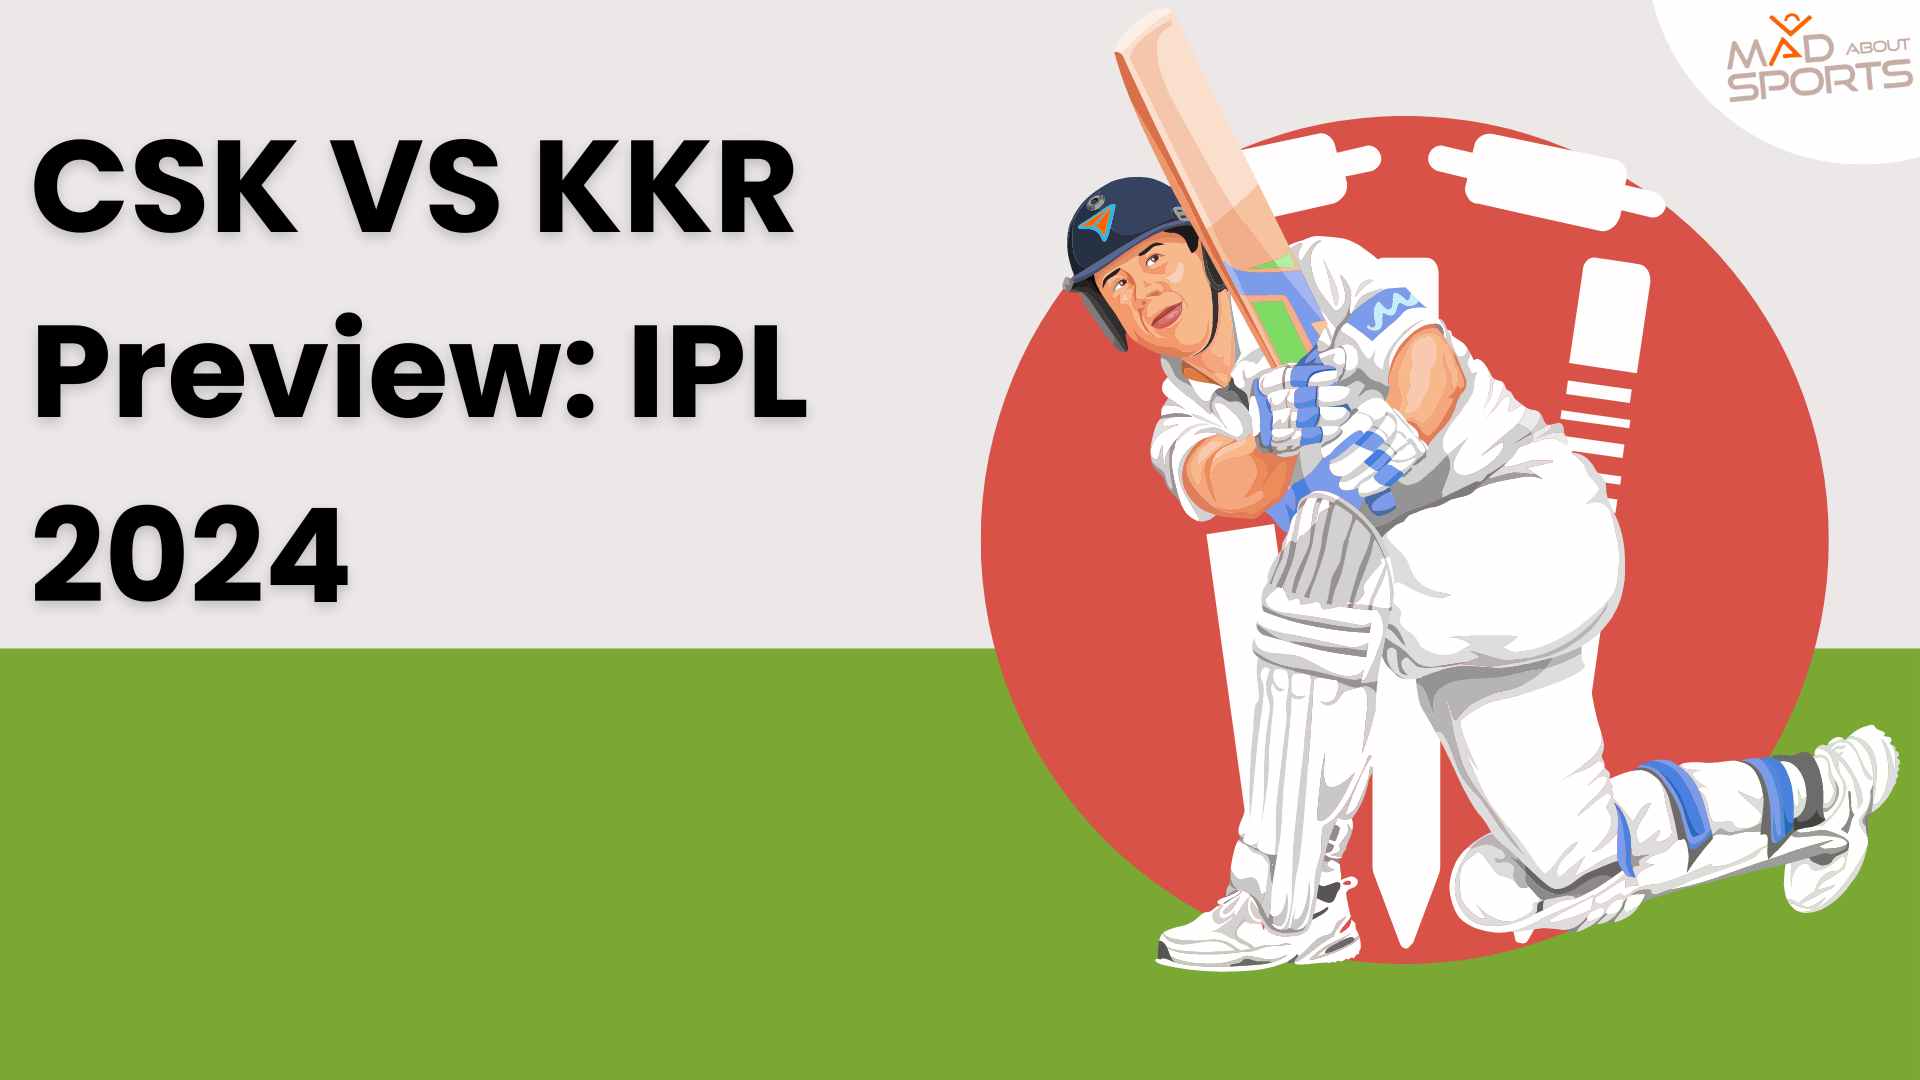 CSK VS KKR Preview: IPL 2024